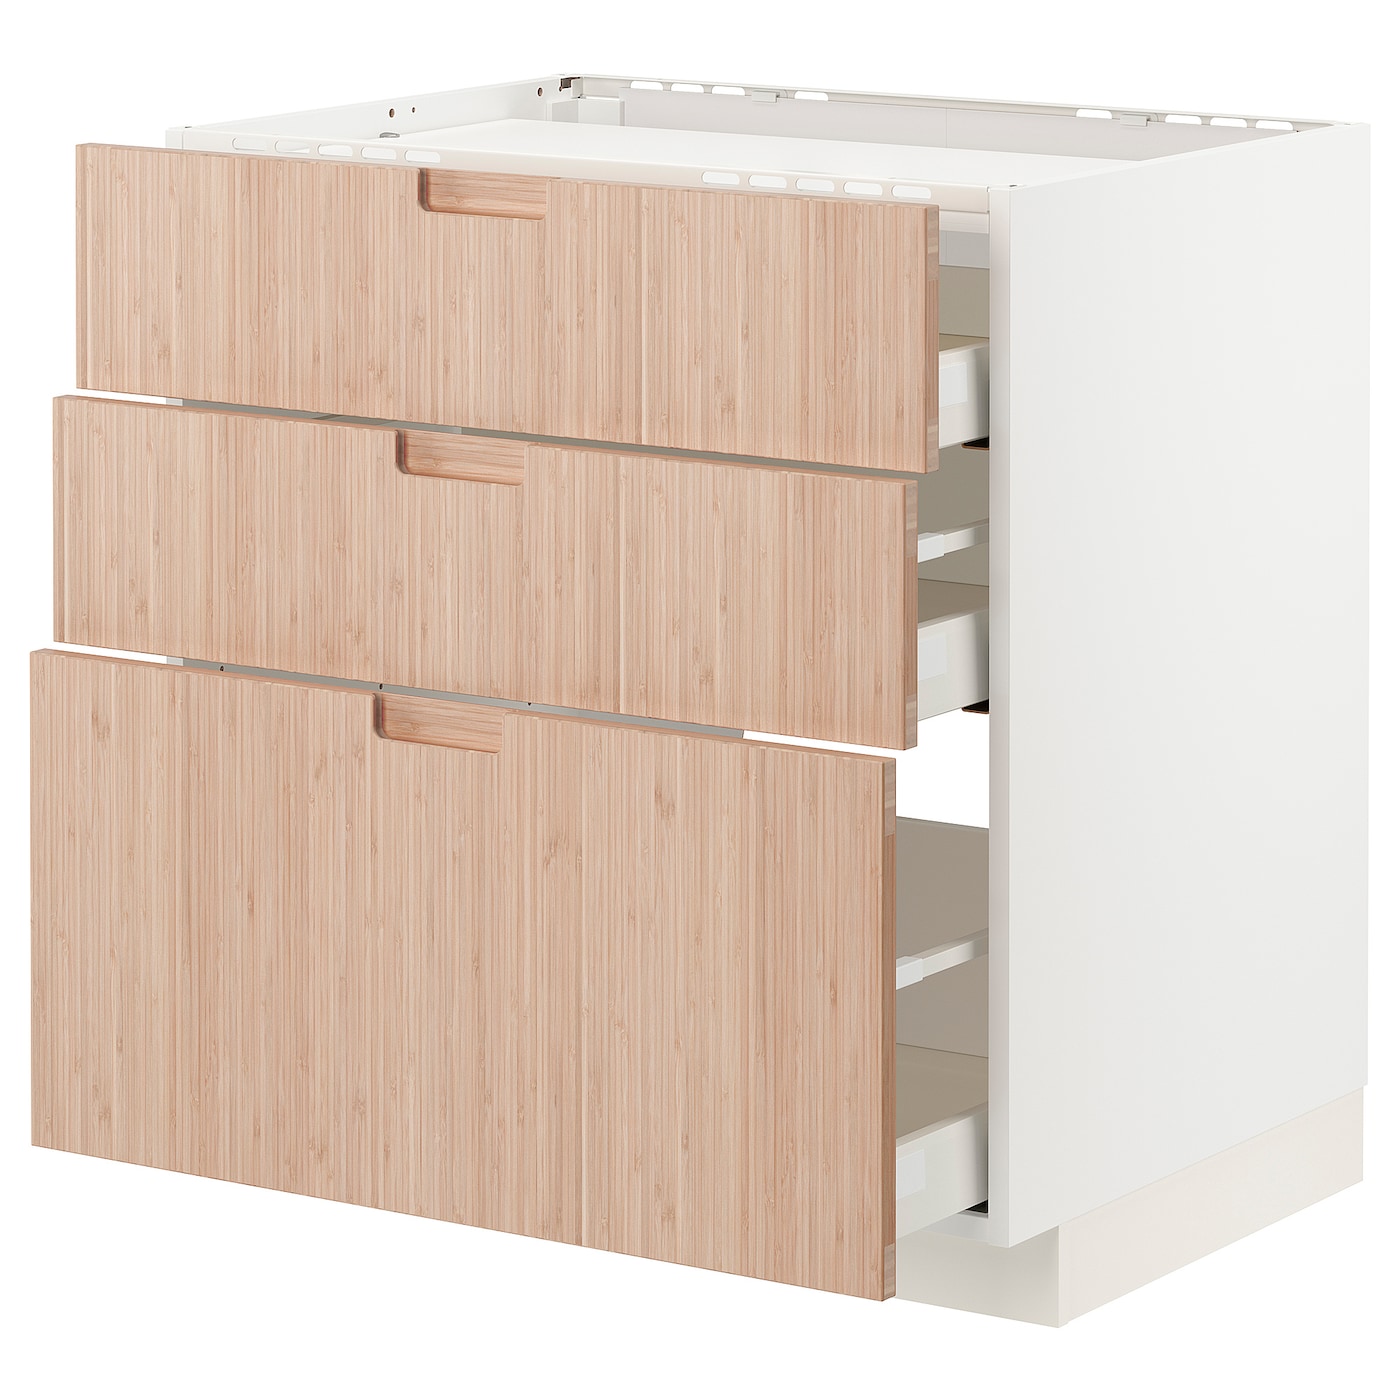 Напольный кухонный шкаф  - IKEA METOD MAXIMERA, 88x62x80см, белый/светлый ясень, МЕТОД МАКСИМЕРА ИКЕА